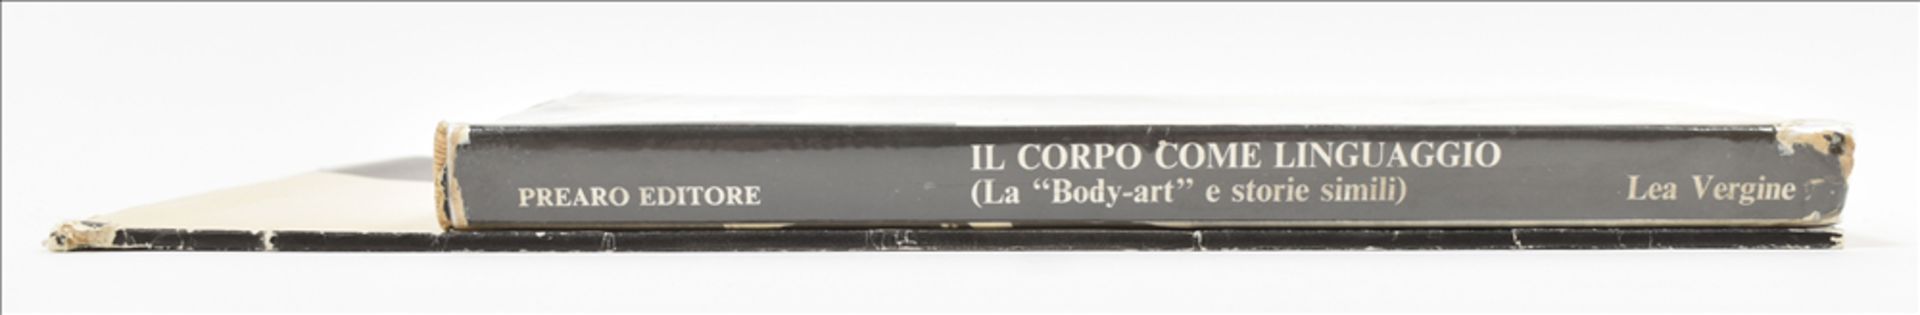 Il Corpo/Body Art and L'Art Corporel - Image 8 of 8